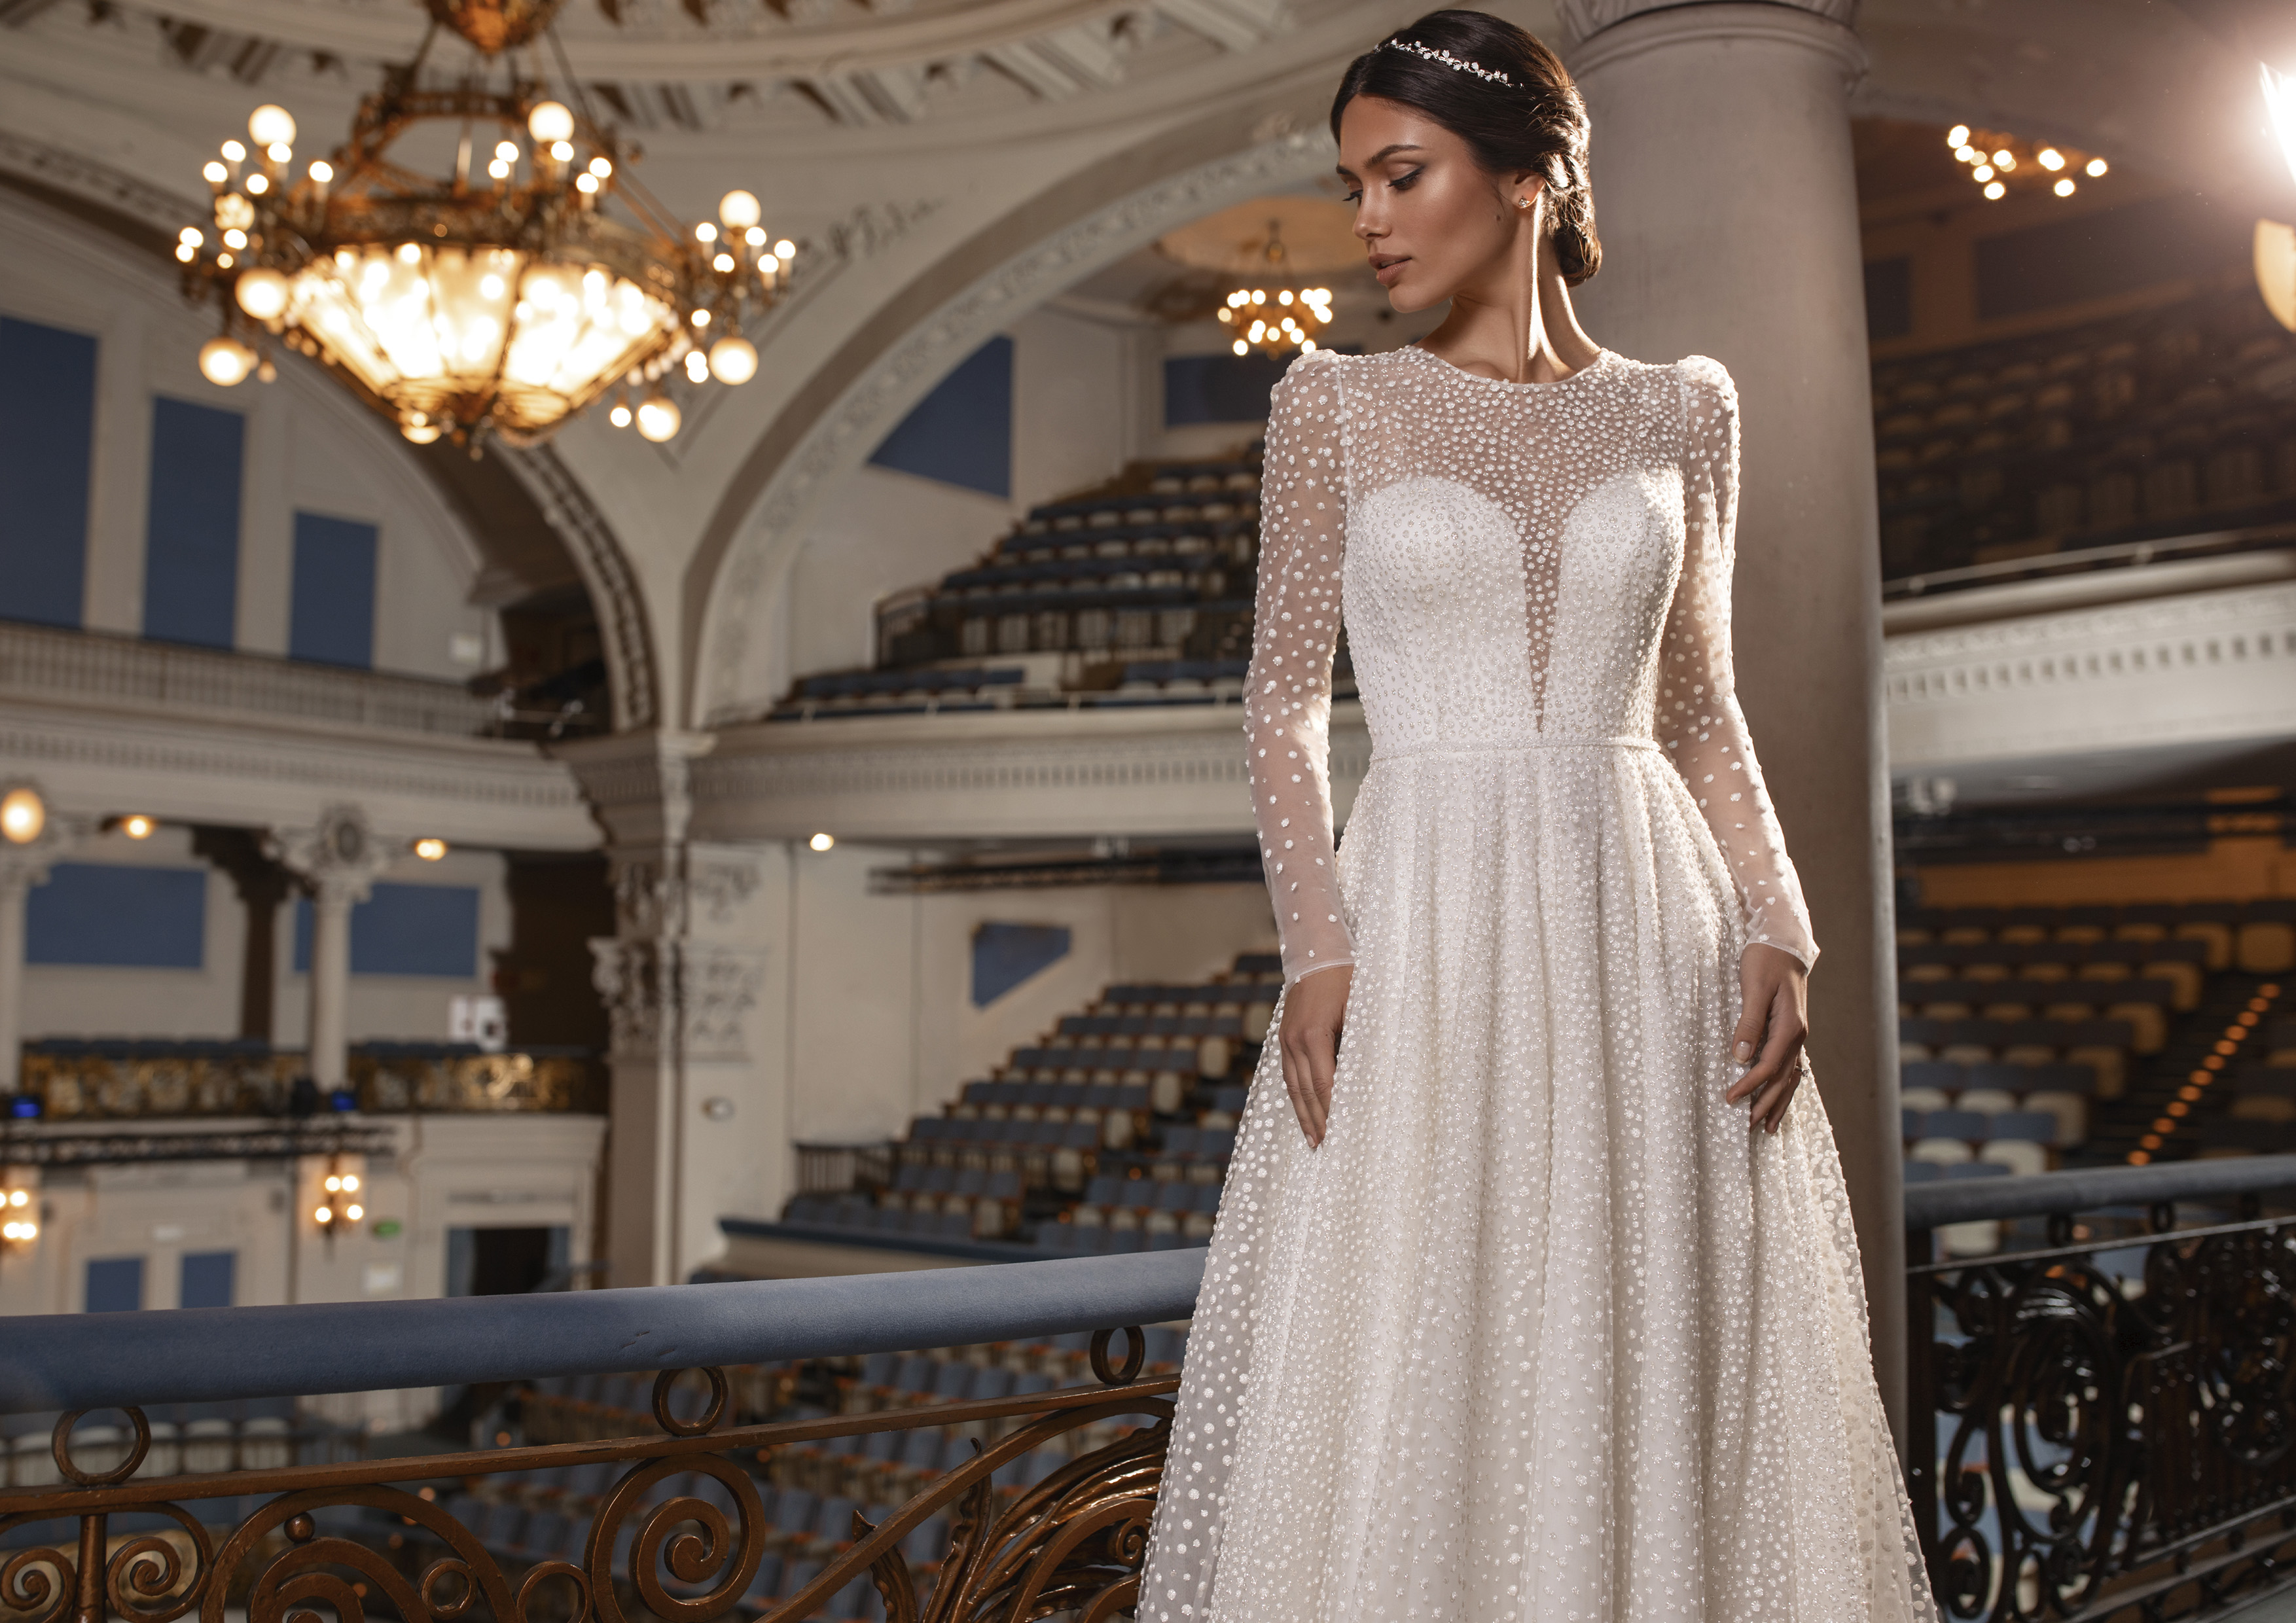 Vestido de noiva corte princesa com fabuloso trabalho de pedraria cosida à mão | Modelo Kent da Pronovias Privée 2021